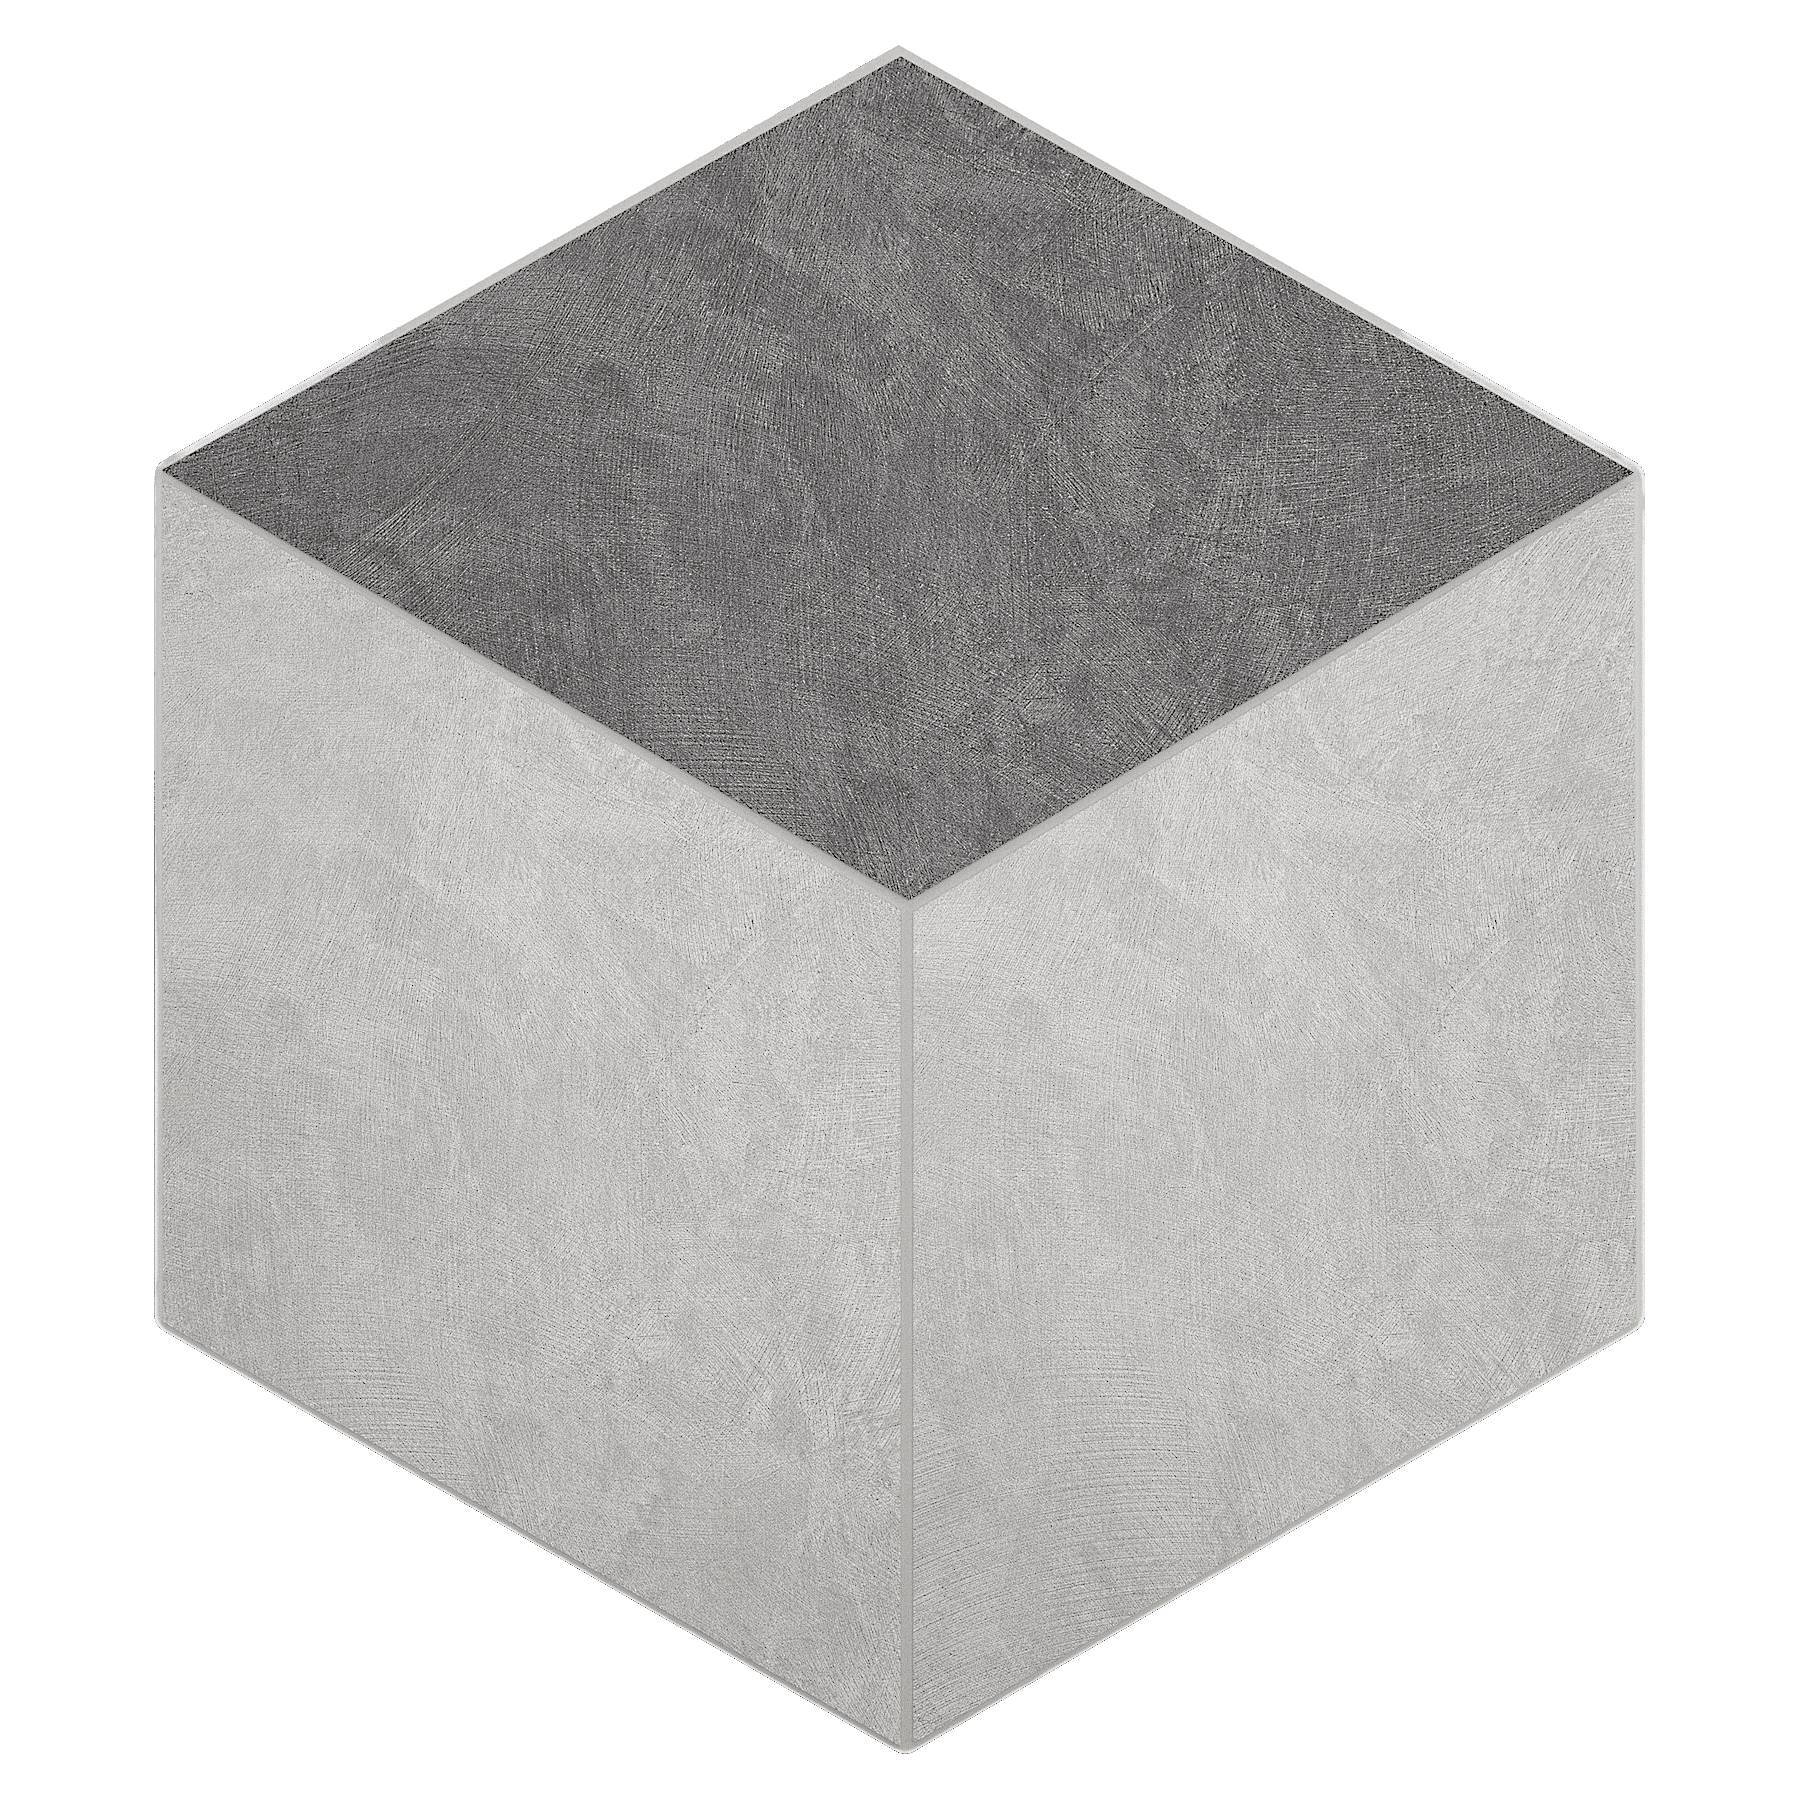 Мозаика Ametis Spectrum Milky White/Grey SR00/SR01 Cube Непол. 29x25 мозаика ametis spectrum milky white grey sr00 sr01 cube непол 29x25